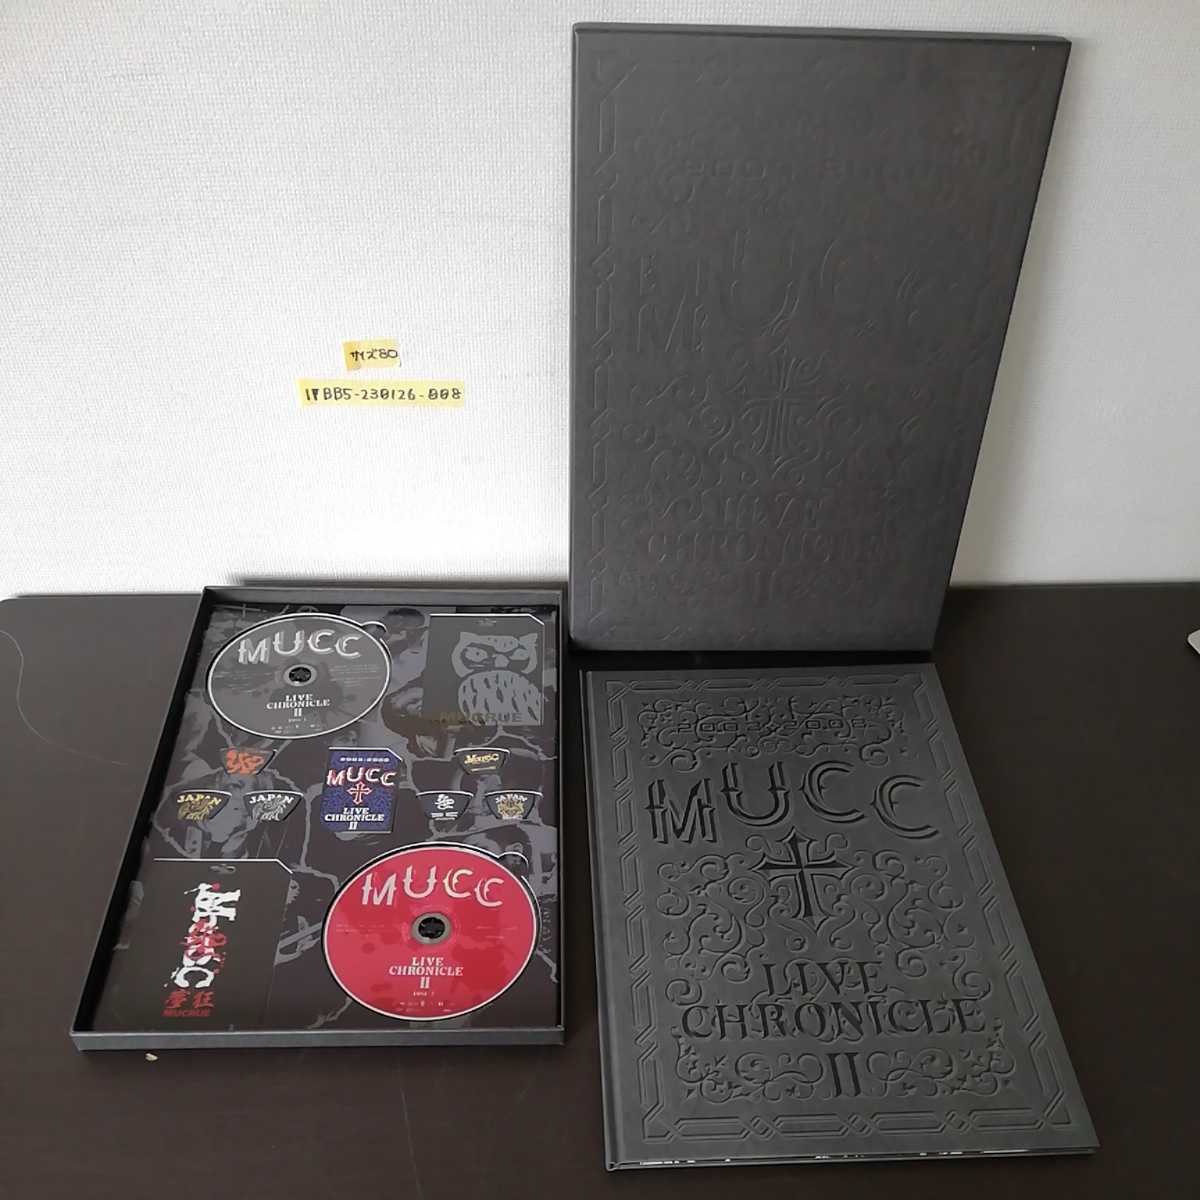 1_▼ MUCC LIVE CHRONICLE Ⅱ 2003 2008 ムック DVD 2枚組 グッズセット 平成14年 平成18年_画像1